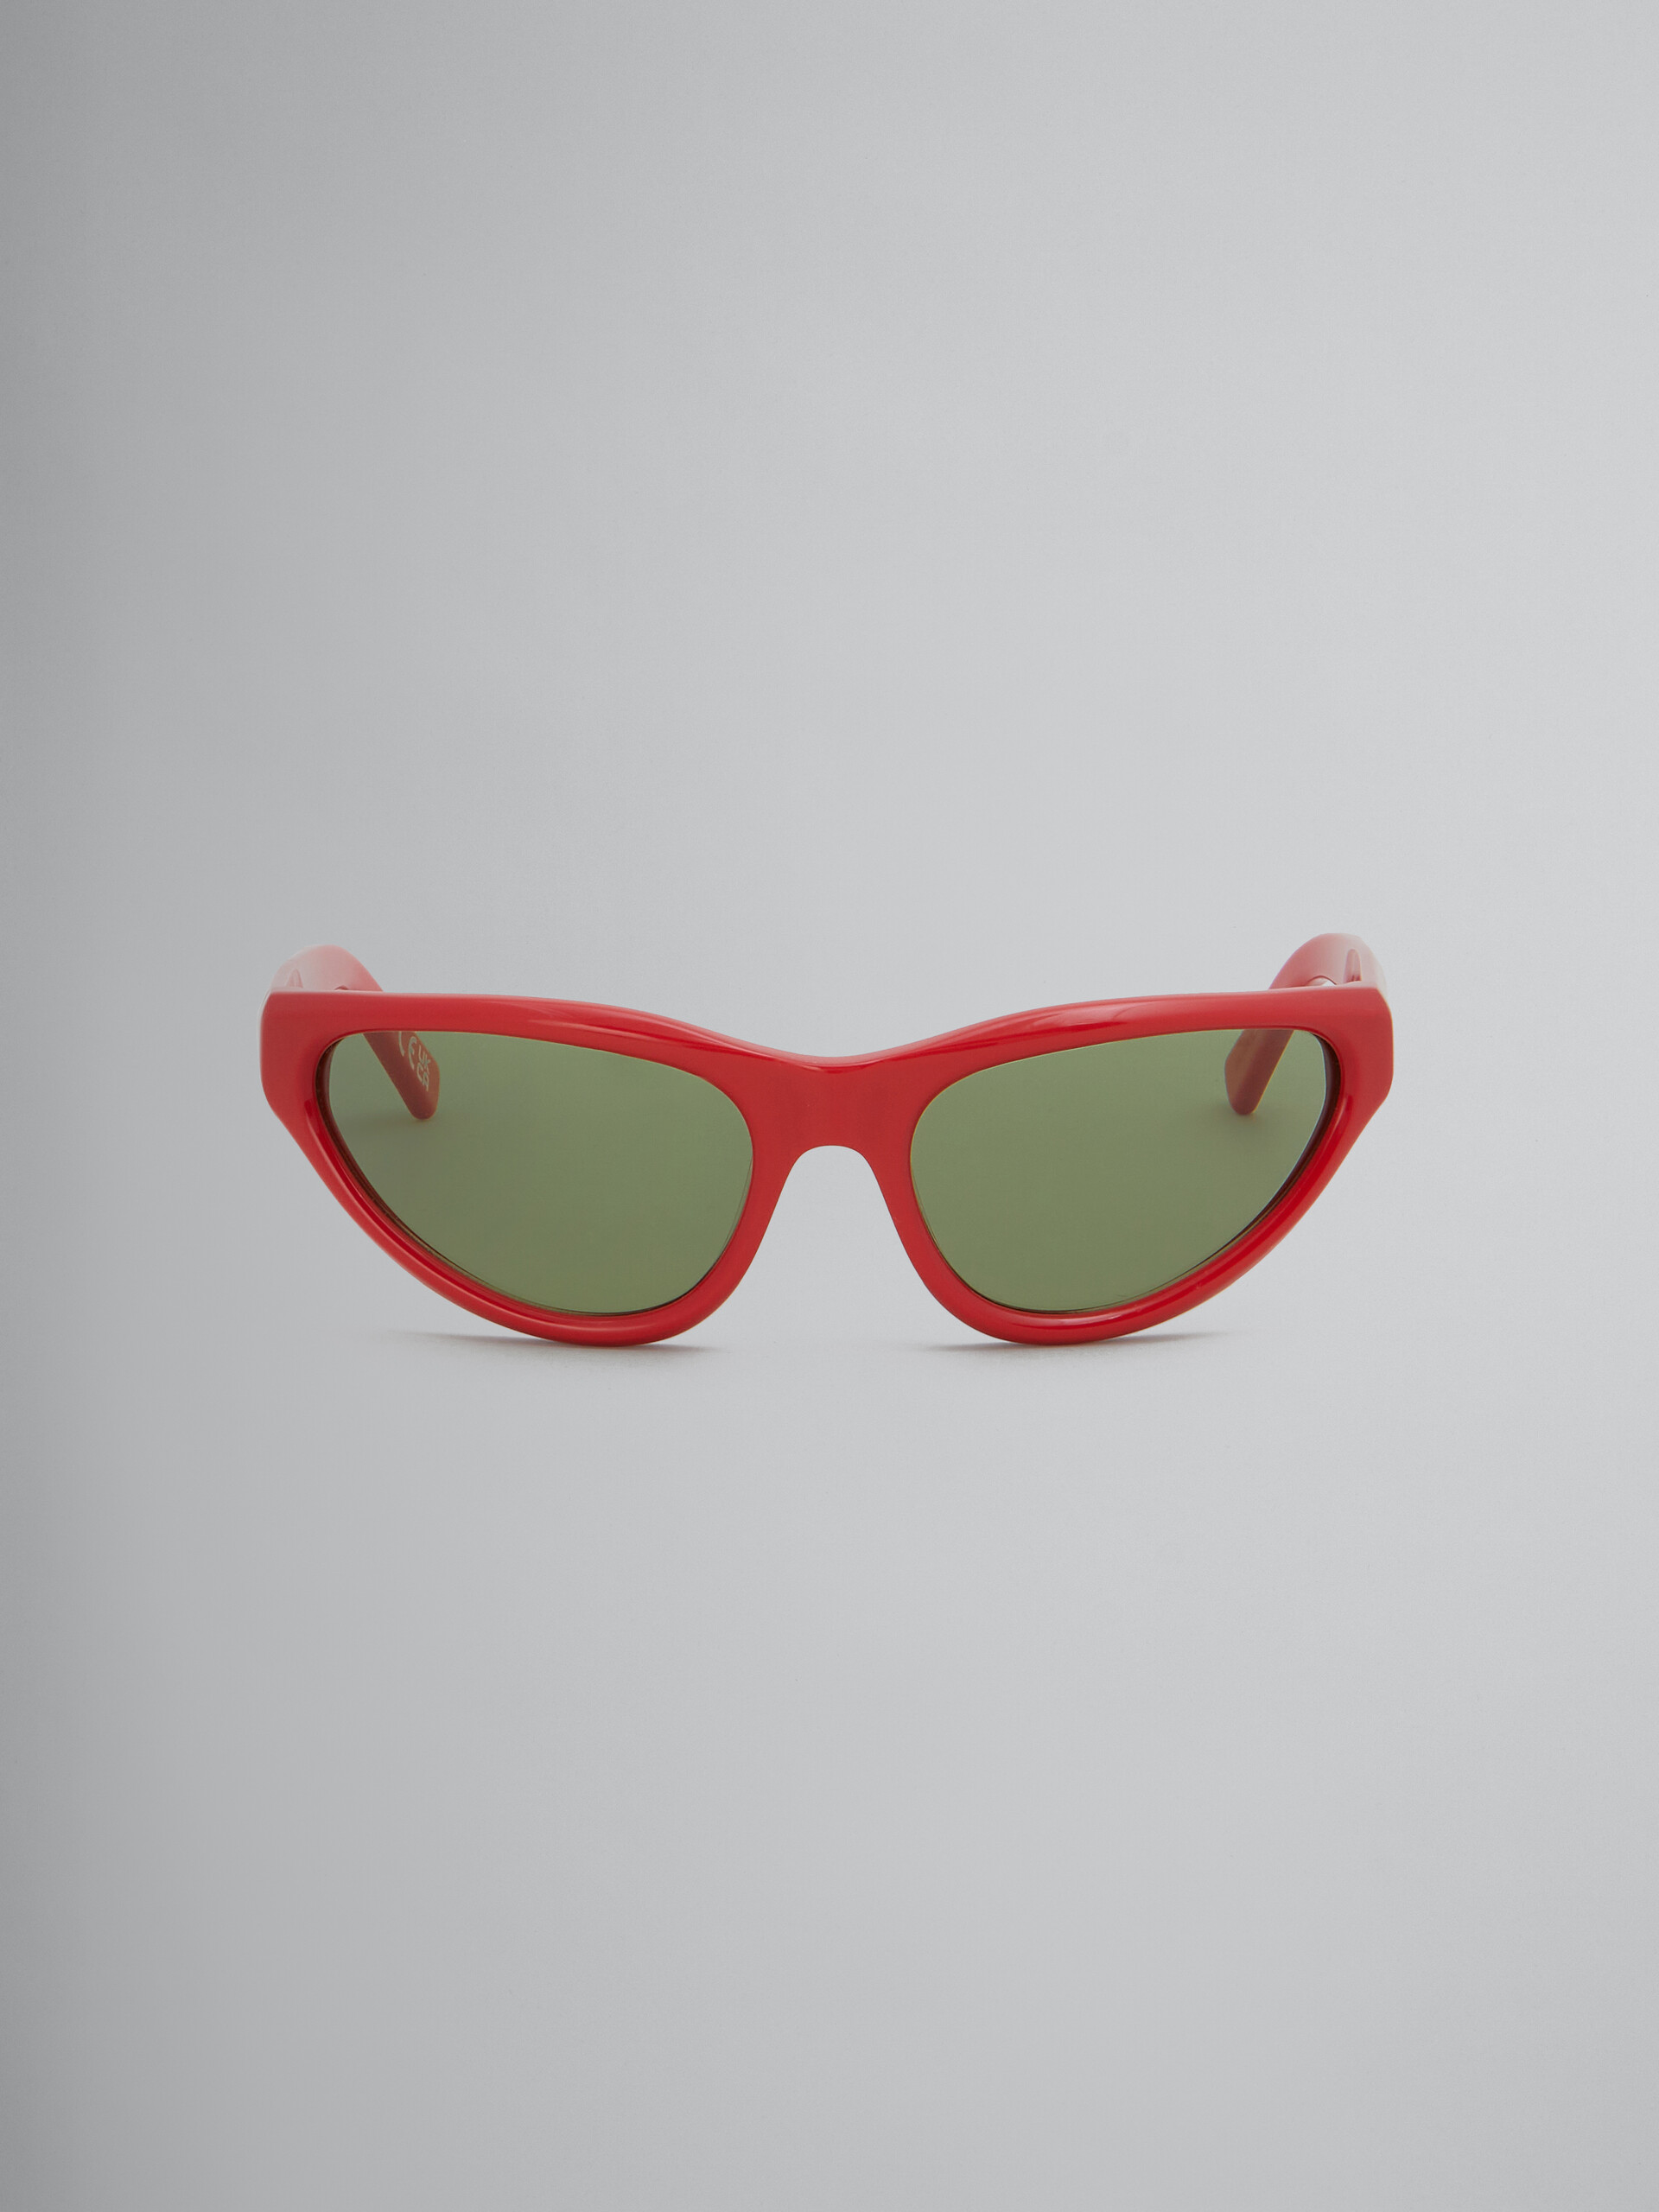 Sonnenbrille Mavericks in Schwarz - Optisch - Image 1